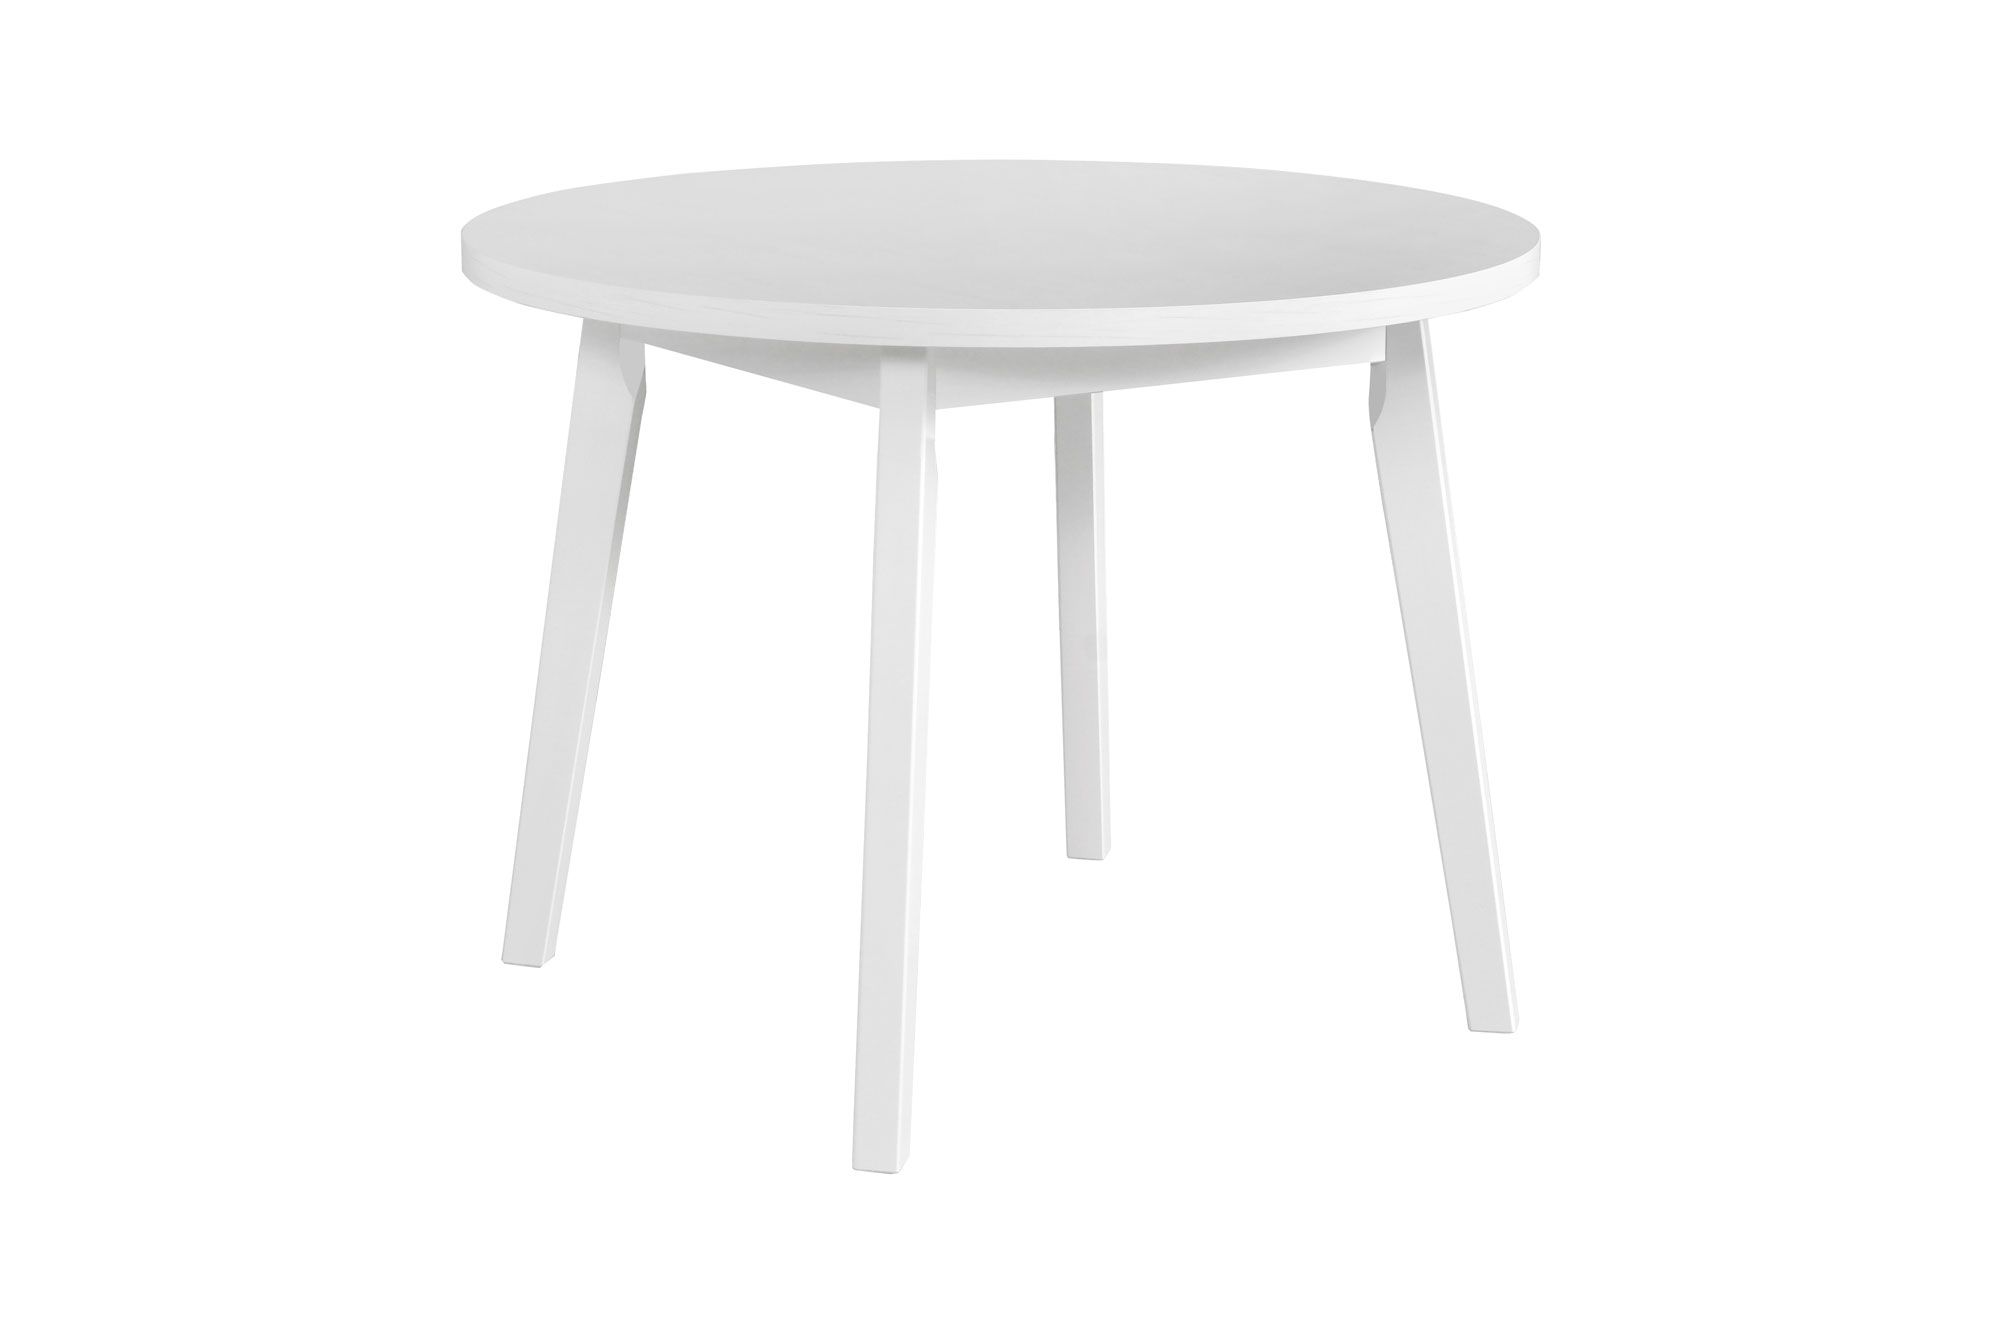 Weißer Esszimmertisch ANDRA, rund, leicht kombinierbar, einfaches Design, Abmessung Ø 100, Tischplattenhöhe 32 mm, stabile Holzfüße, hohe Festigkeit